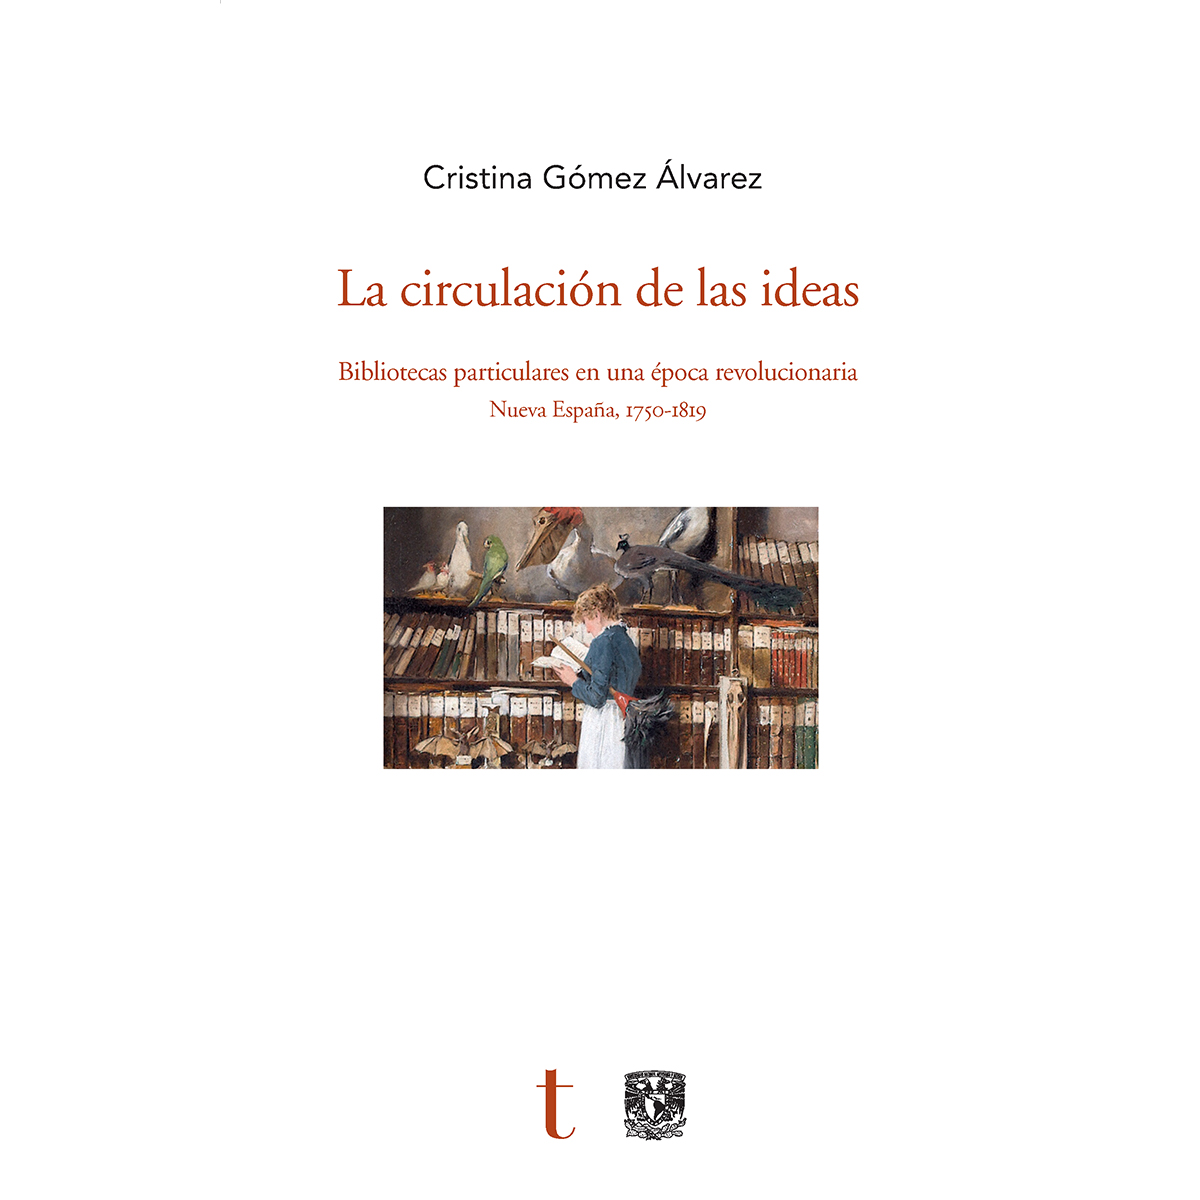 LA CIRCULACIÓN DE LAS IDEAS. BIBLIOTECAS PARTICULARES EN UNA ÉPOCA REVOLUCIONARIA. NUEVA ESPAÑA, 1750-1819